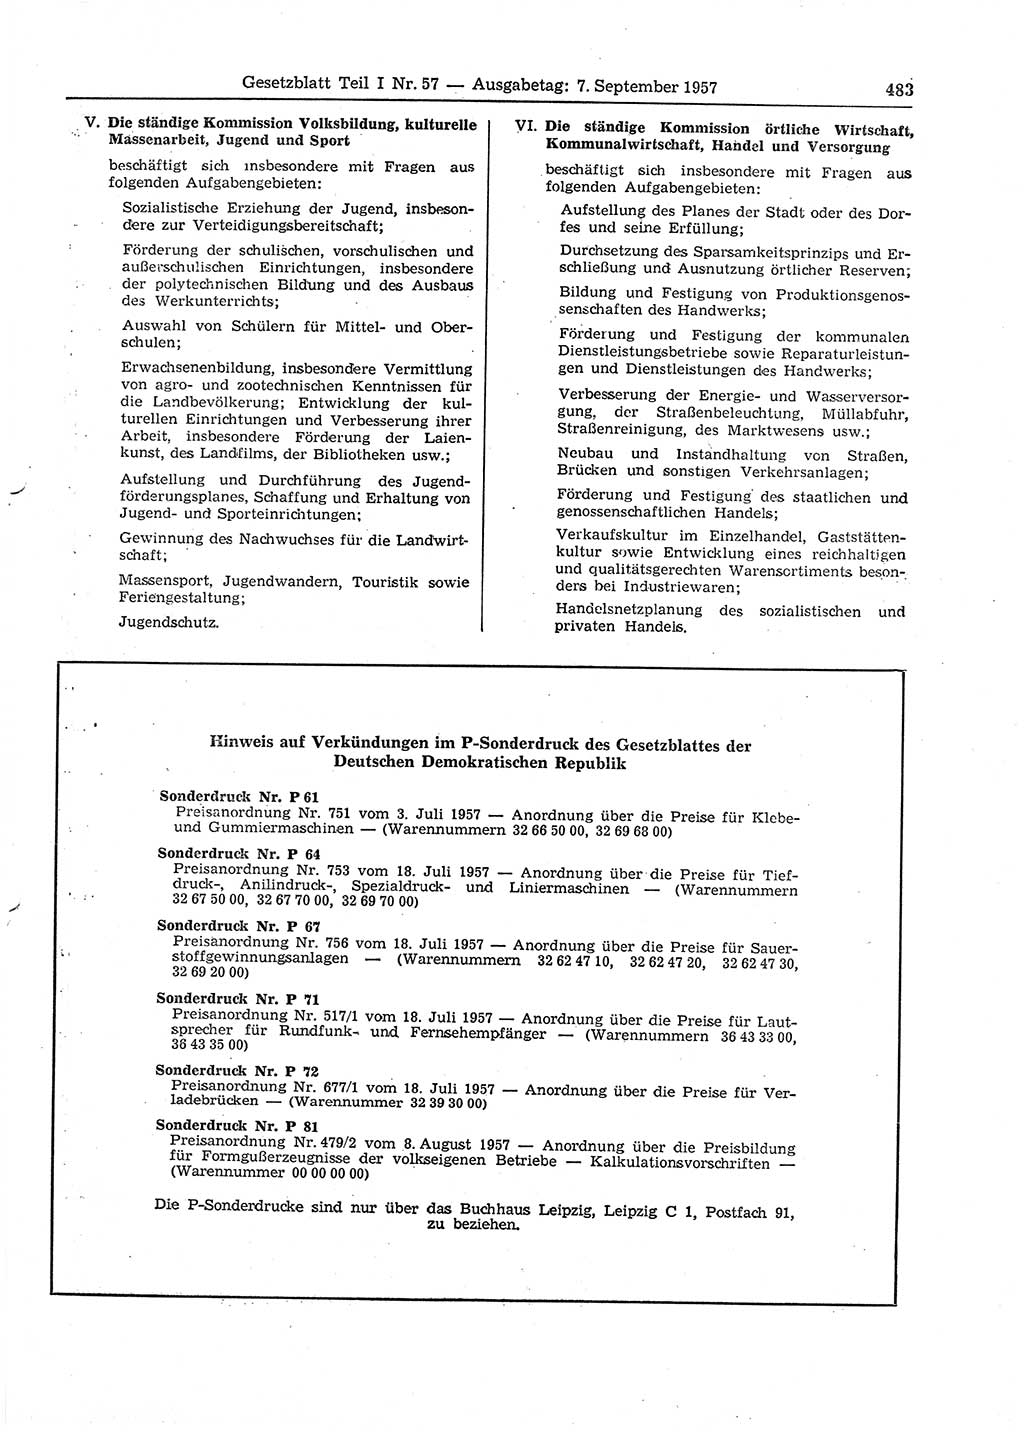 Gesetzblatt (GBl.) der Deutschen Demokratischen Republik (DDR) Teil Ⅰ 1957, Seite 483 (GBl. DDR Ⅰ 1957, S. 483)